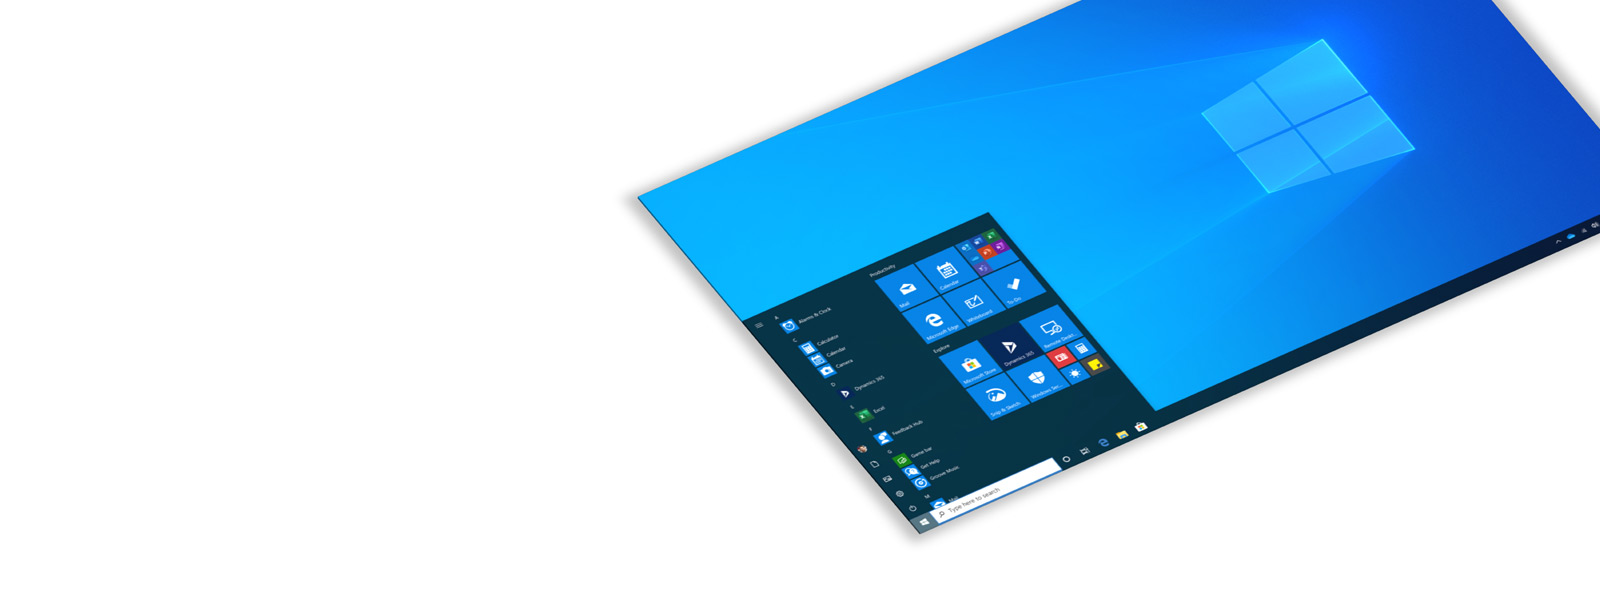 【新品未開封】Microsoft Windows 10 Pro